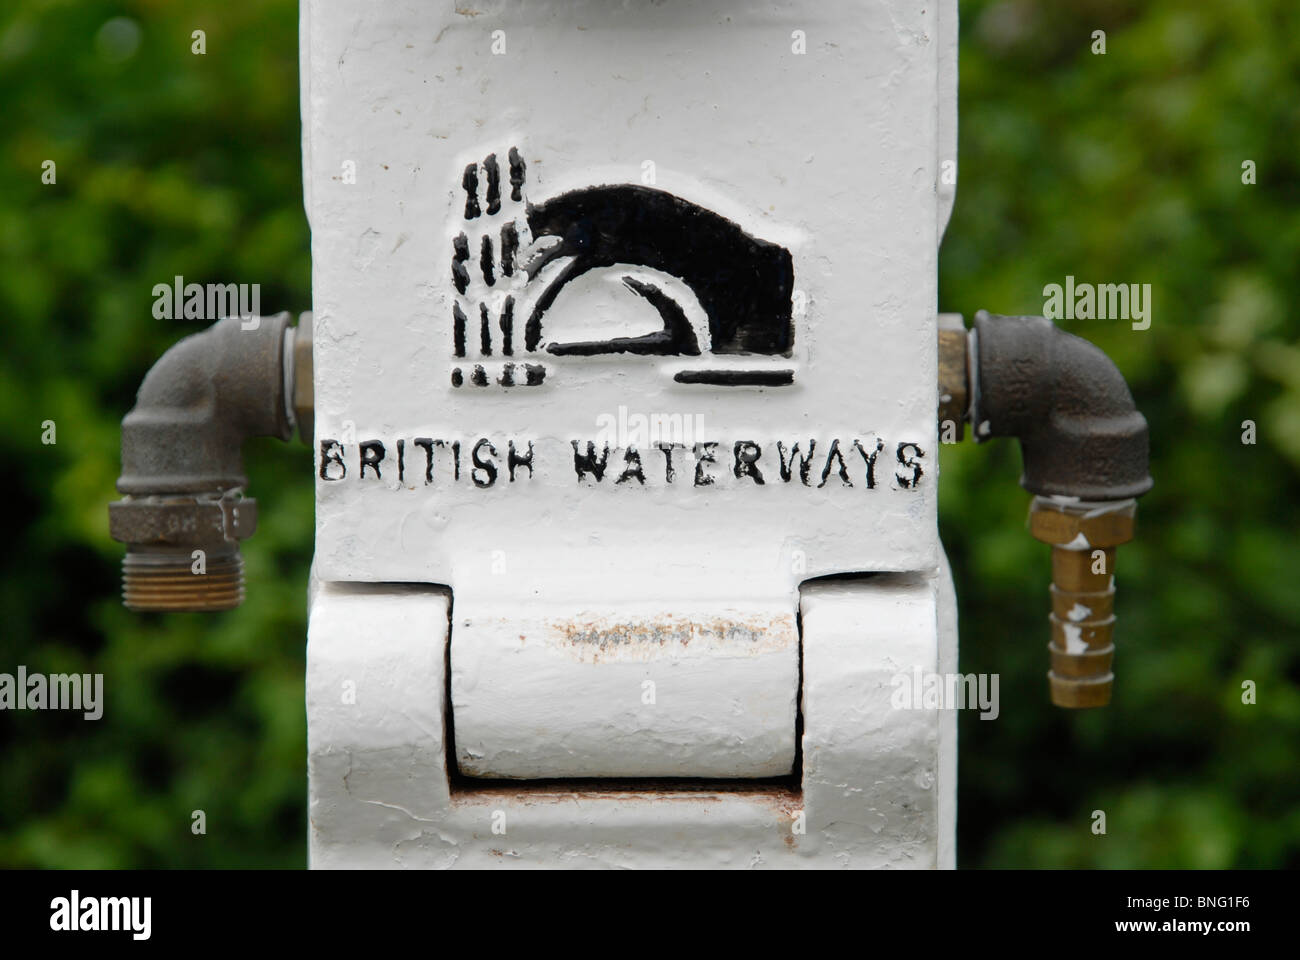 British Waterways logo on a waterpoint at Foxton, Leics Stock Photo